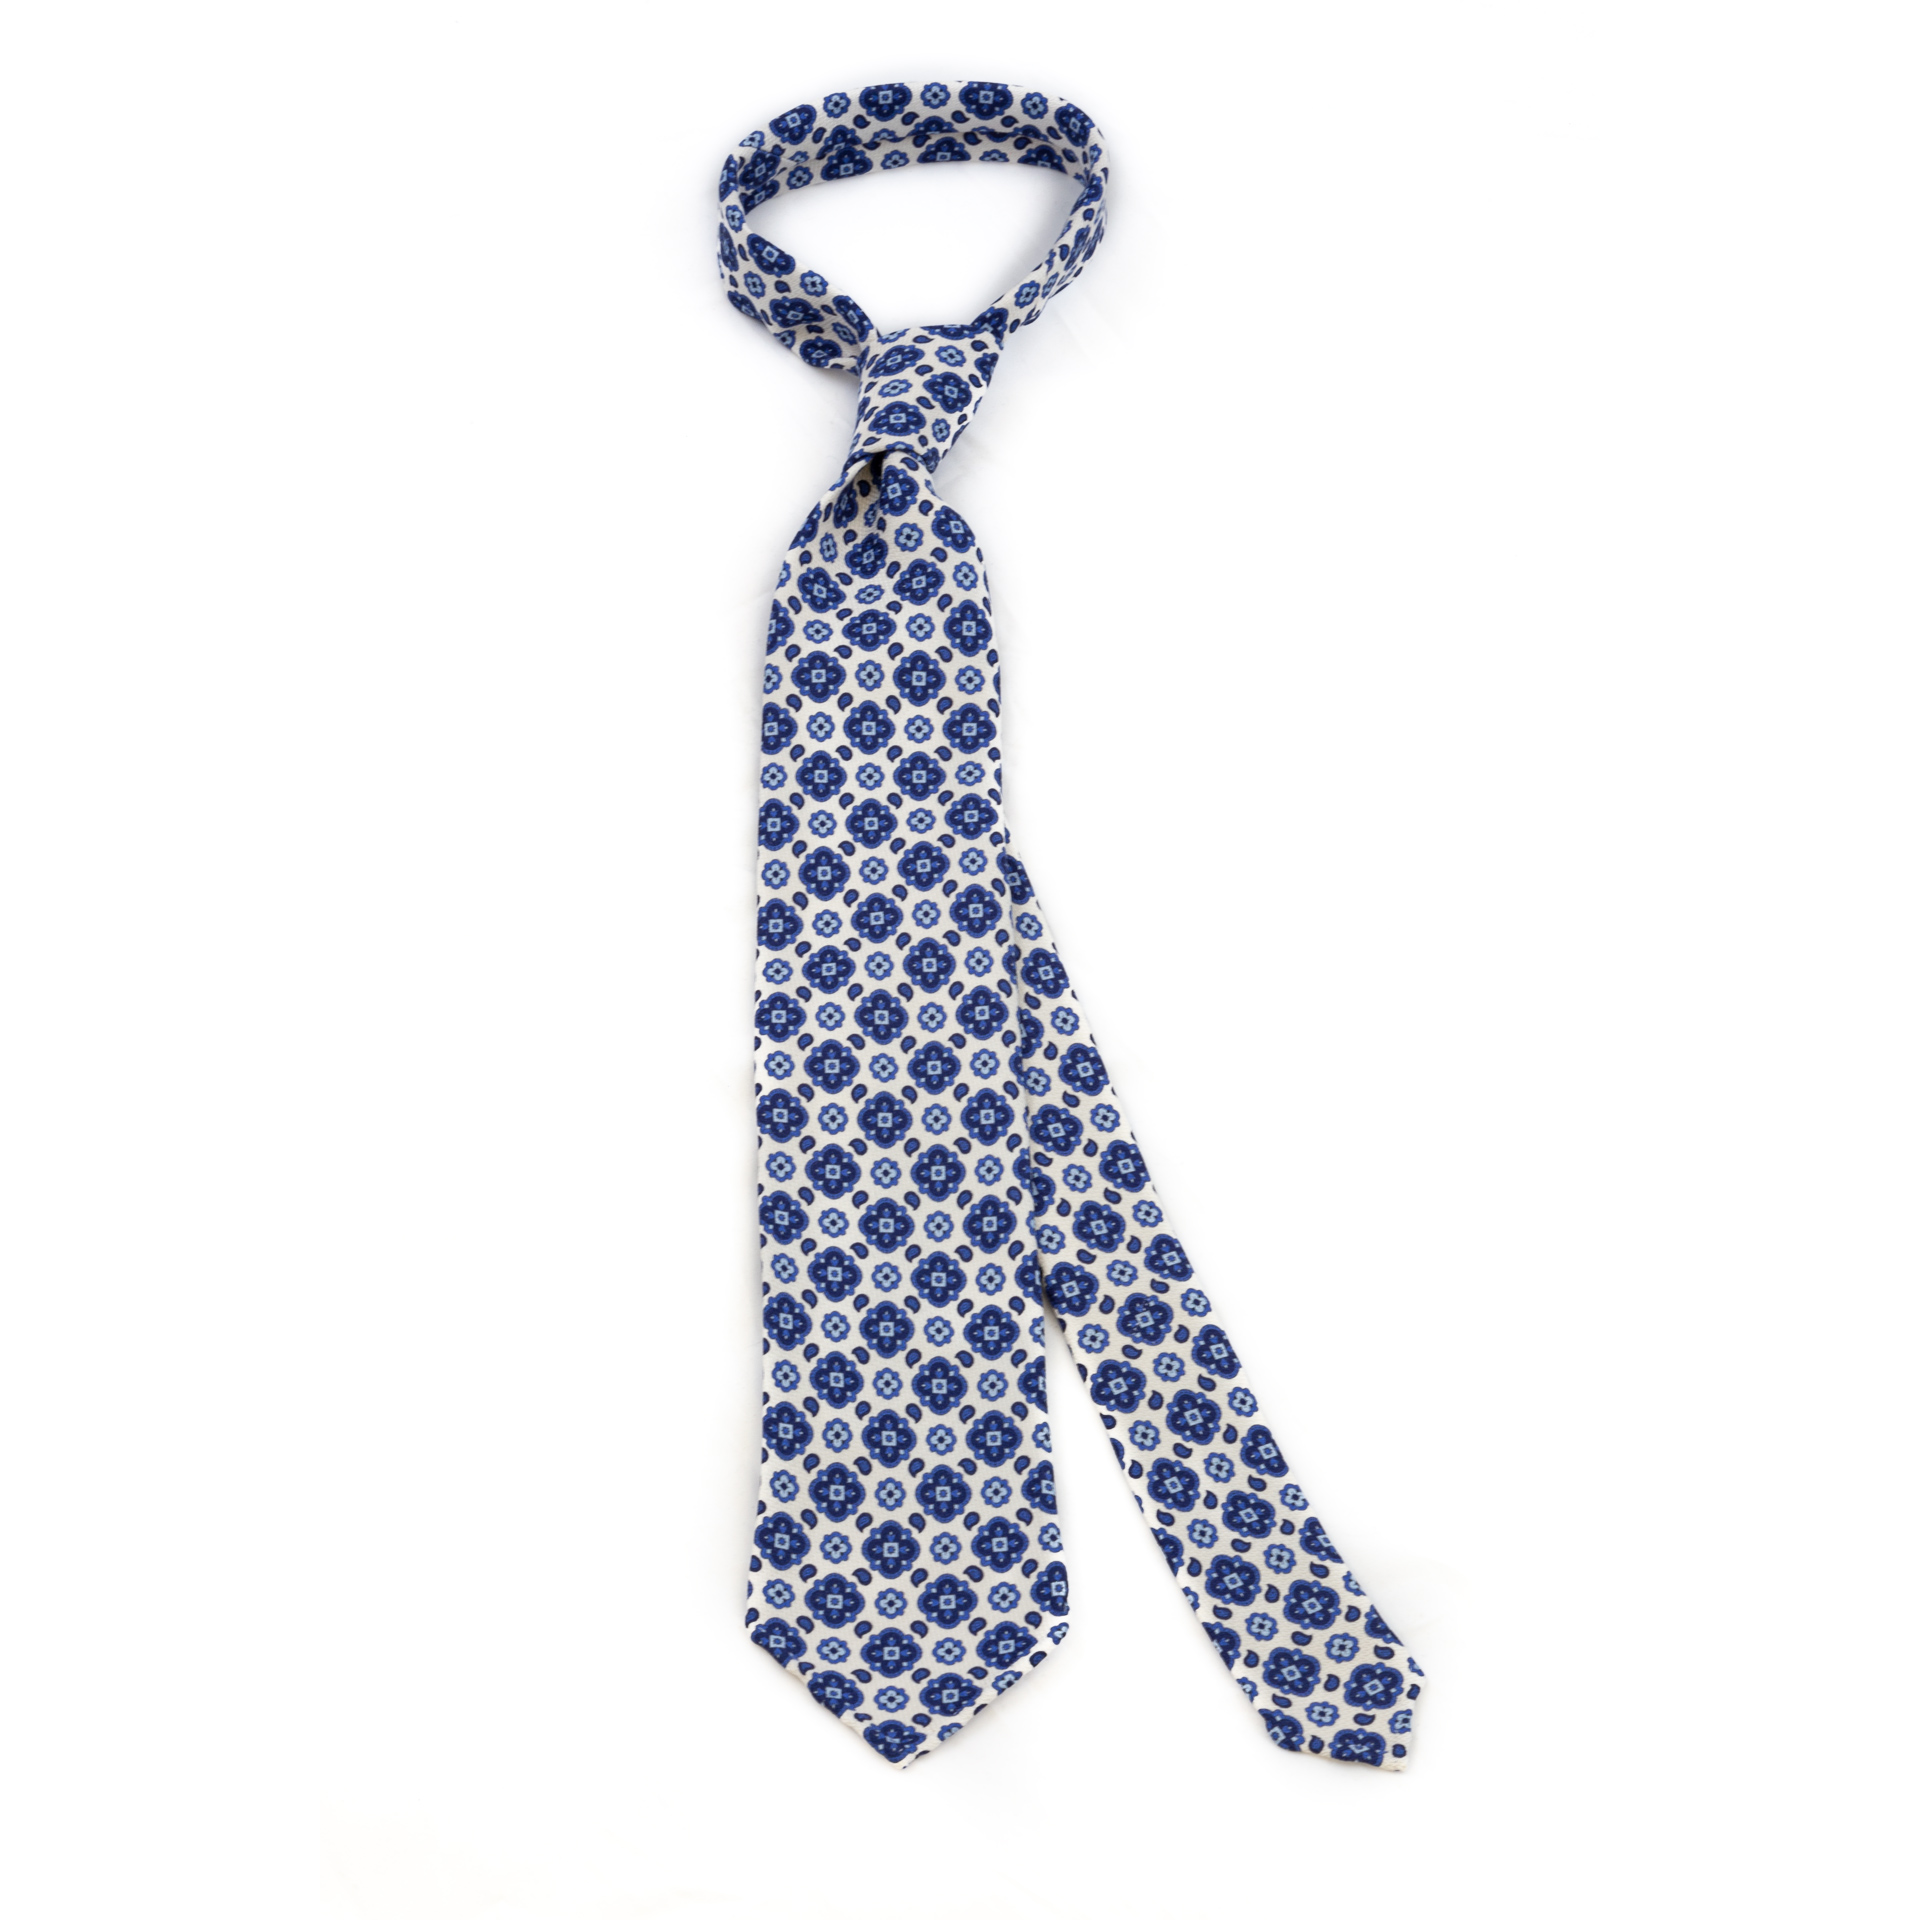 DLA White 5-fold printed soft silk tie